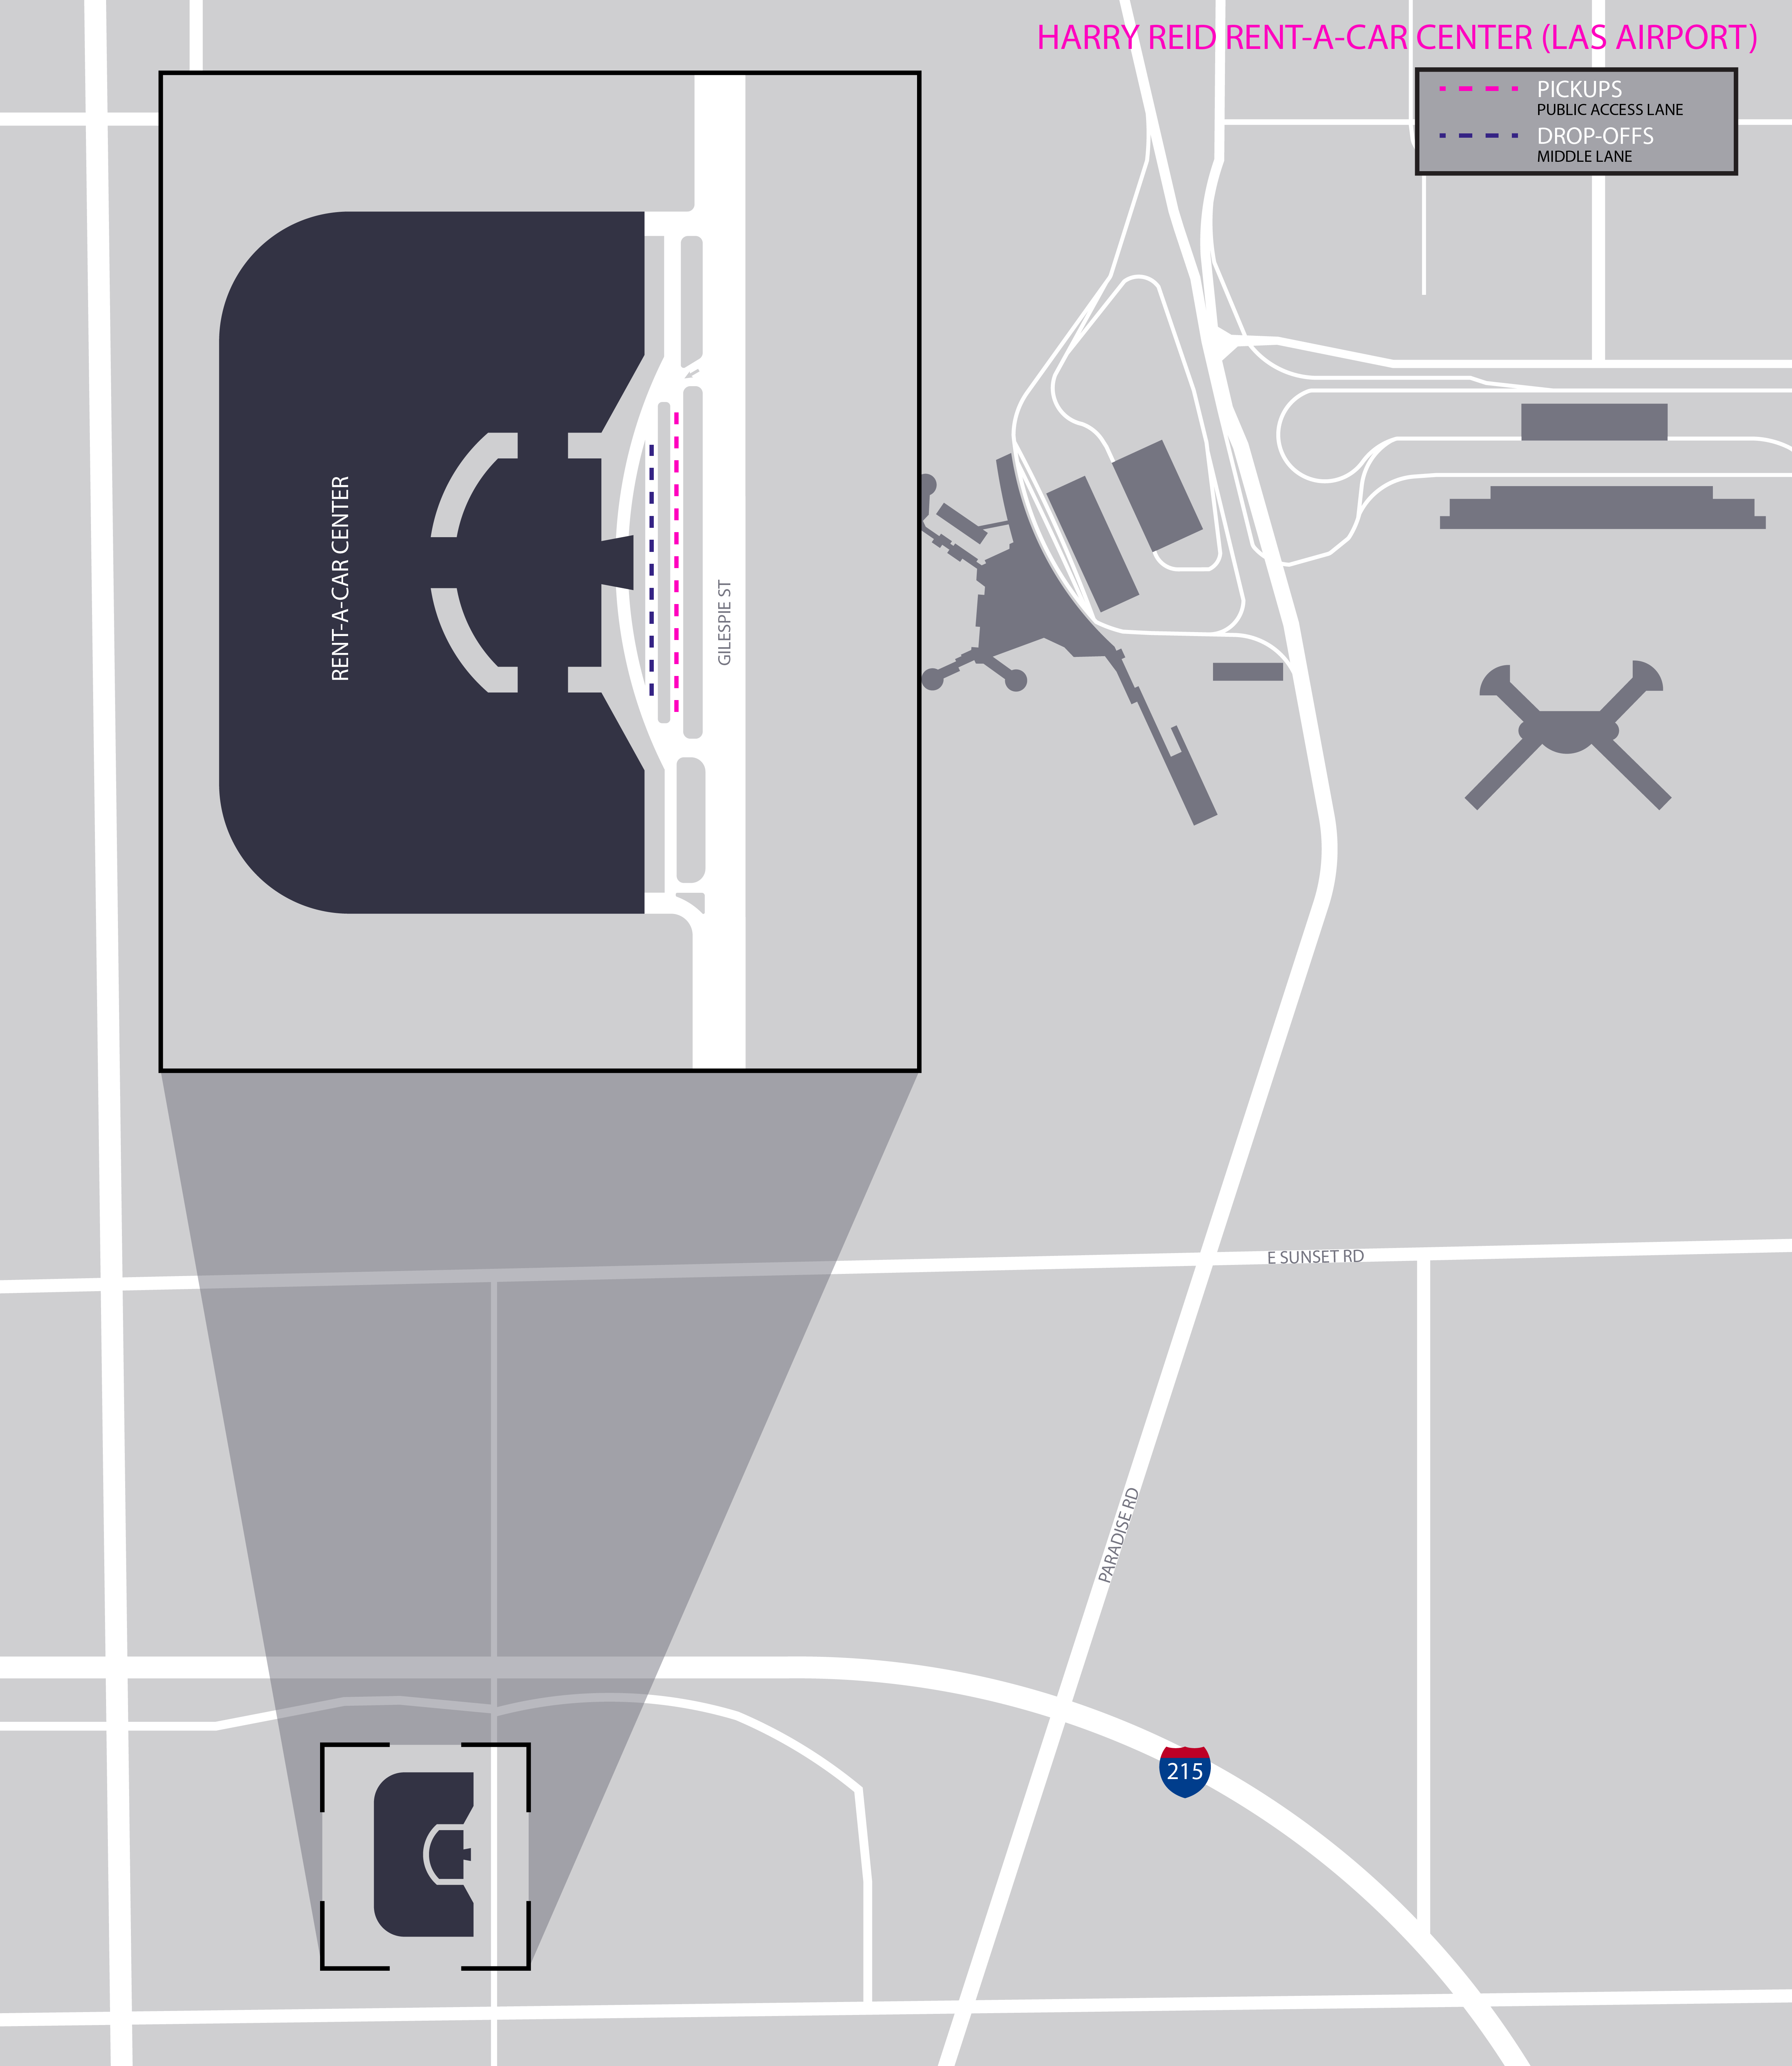 Mapa del centro de alquiler de autos en el Aeropuerto Internacional Harry Reid (LAS).